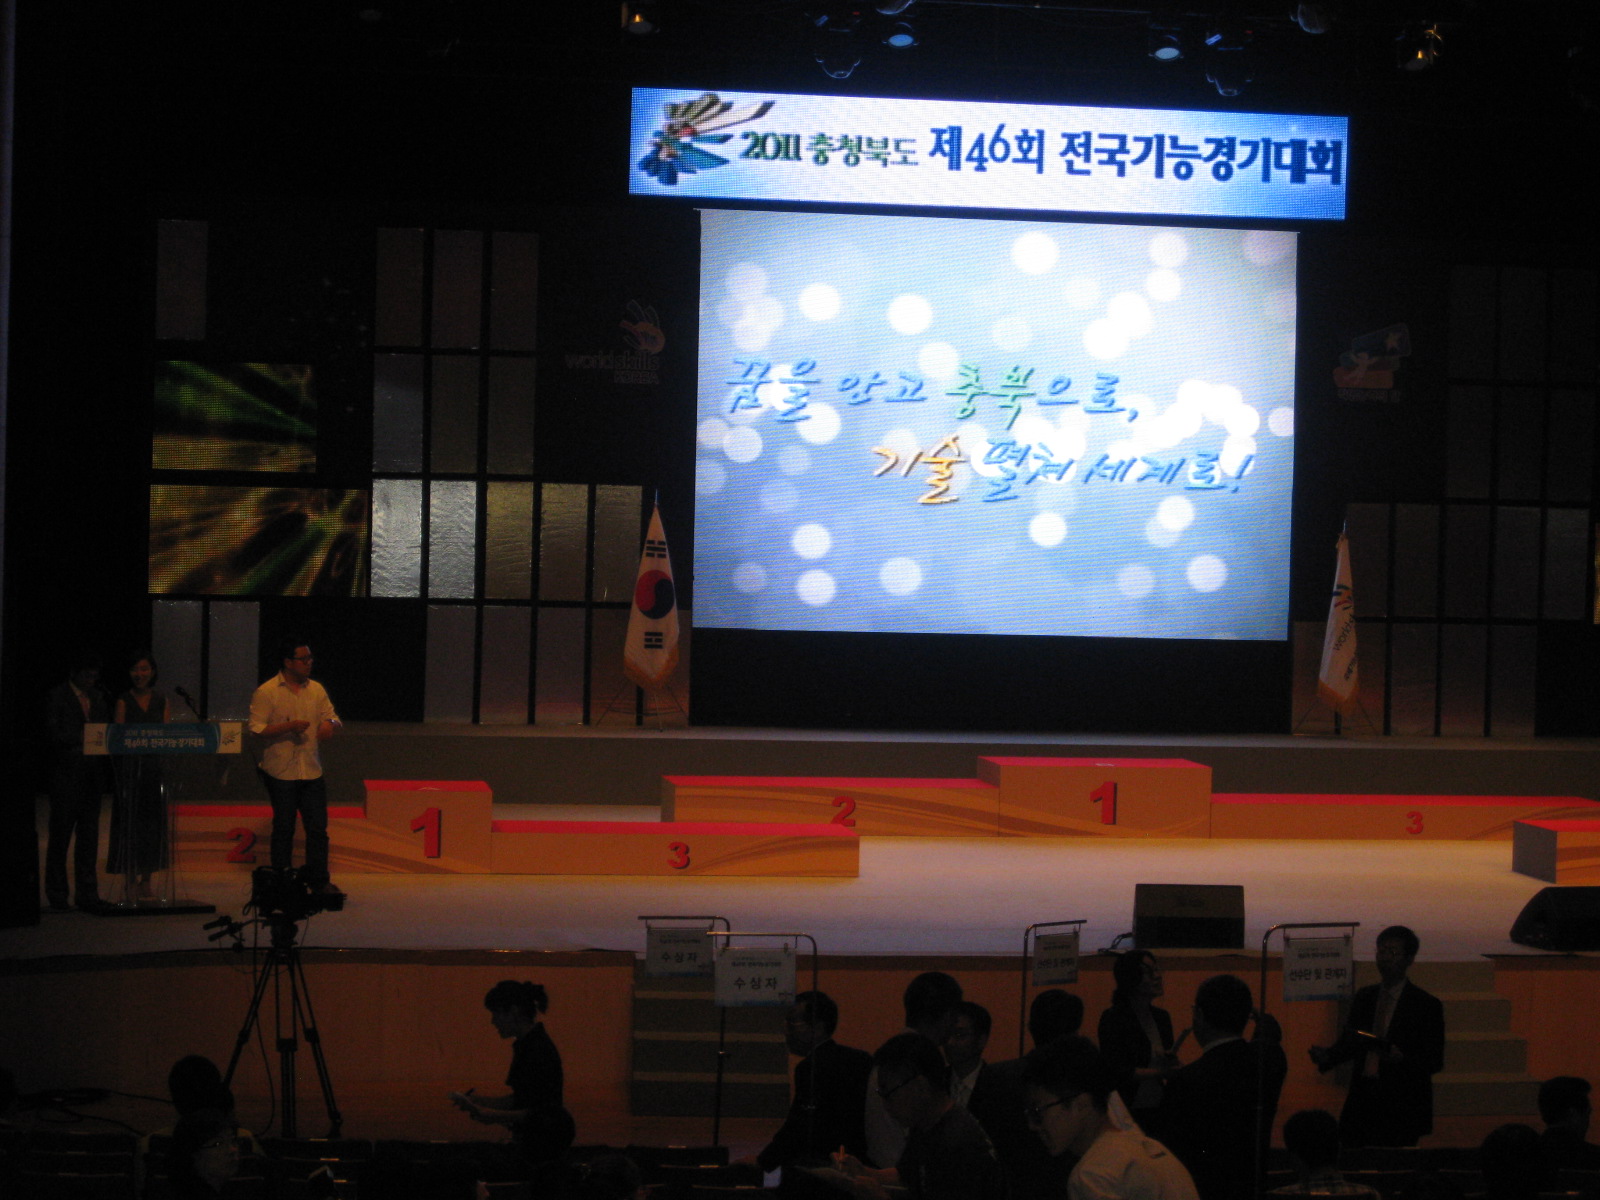 2011년 충청북도 - 제 46회 전국기능경기대회